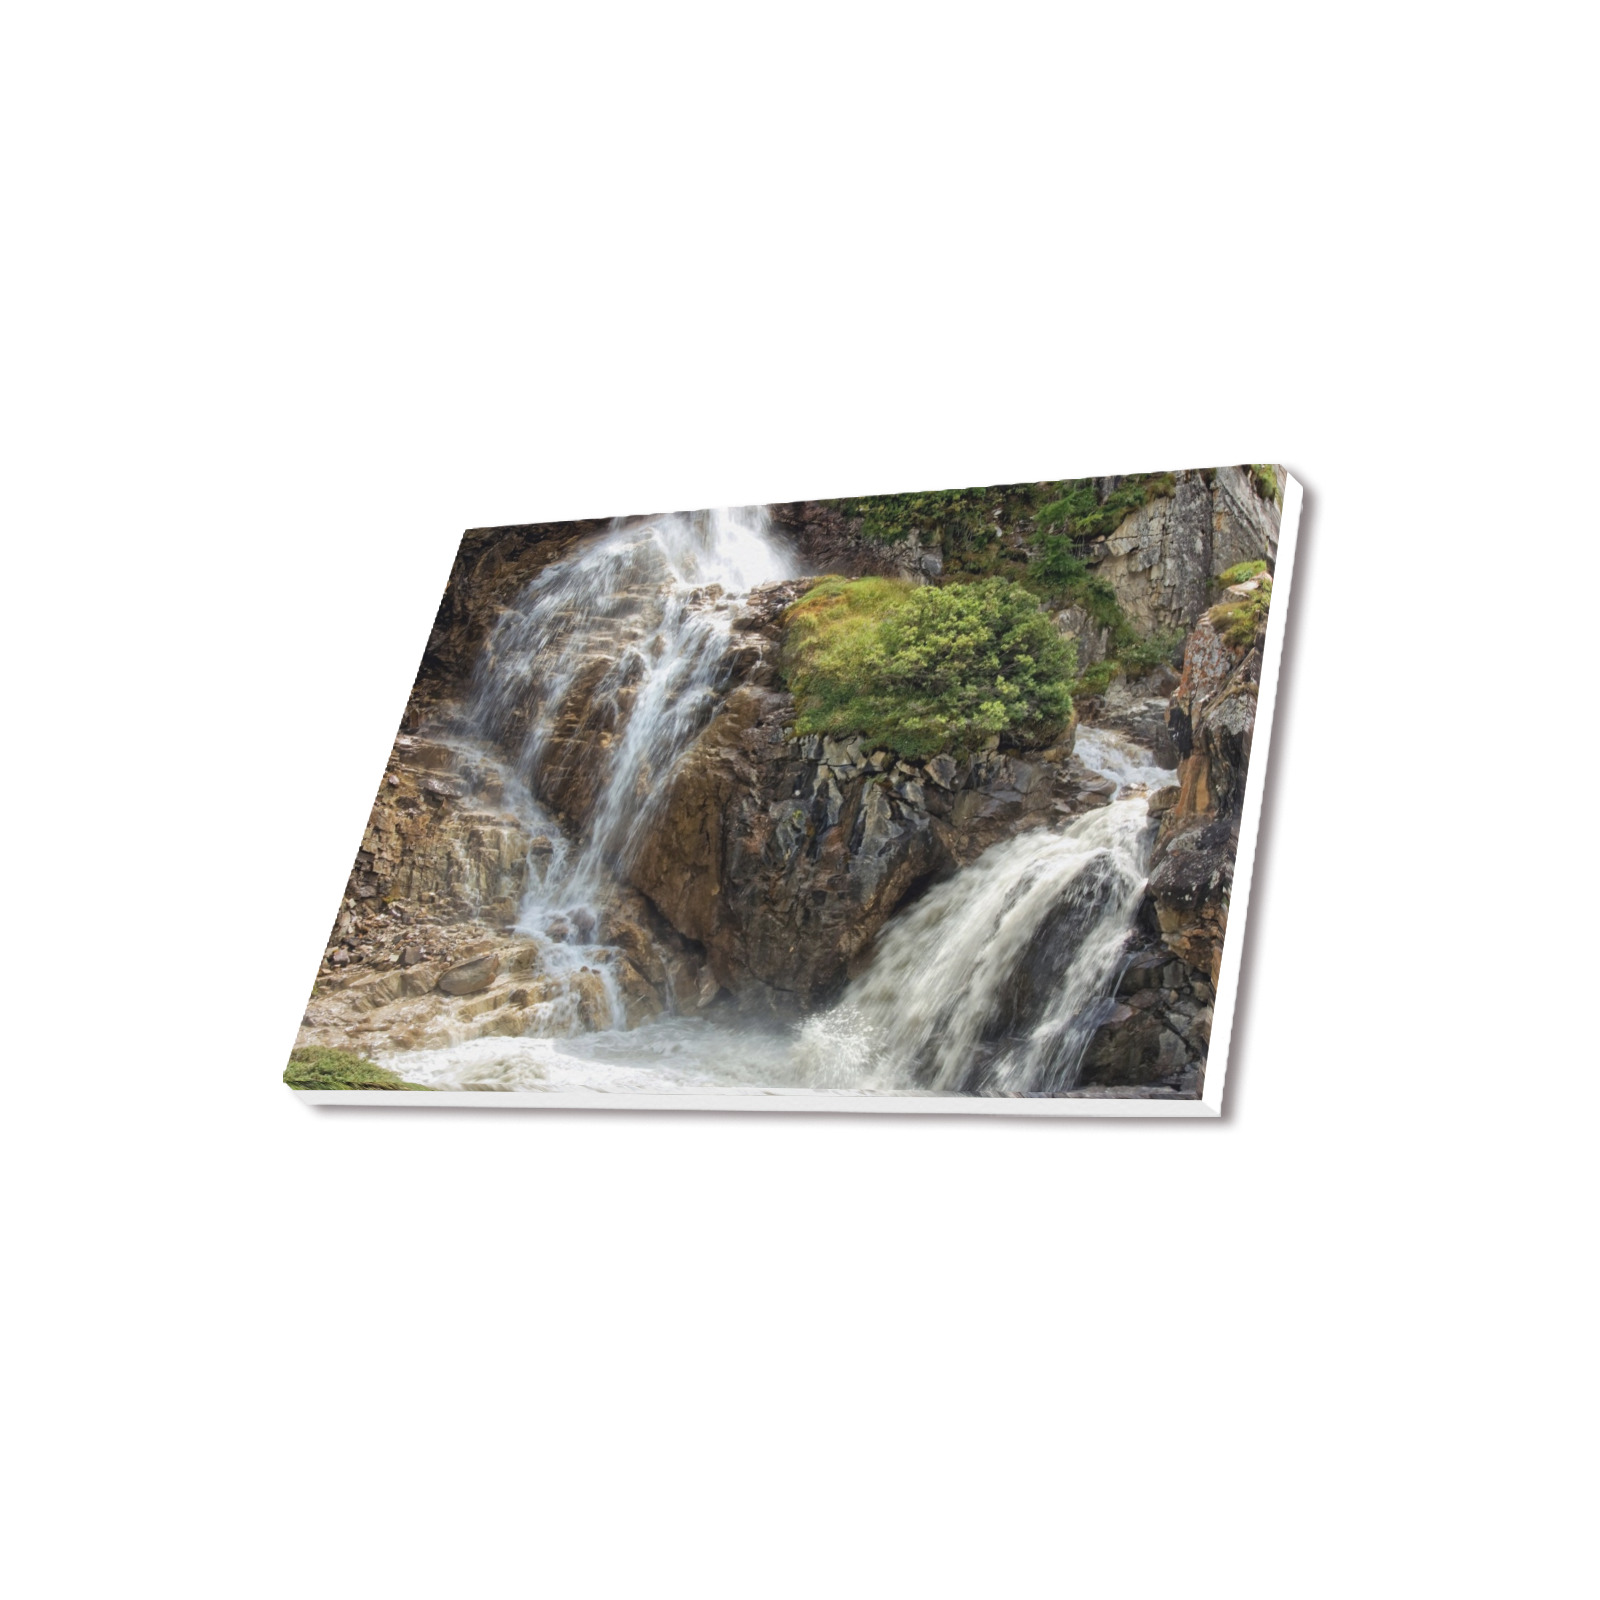 Mountain river rocks Frame Canvas Print 18"x12"